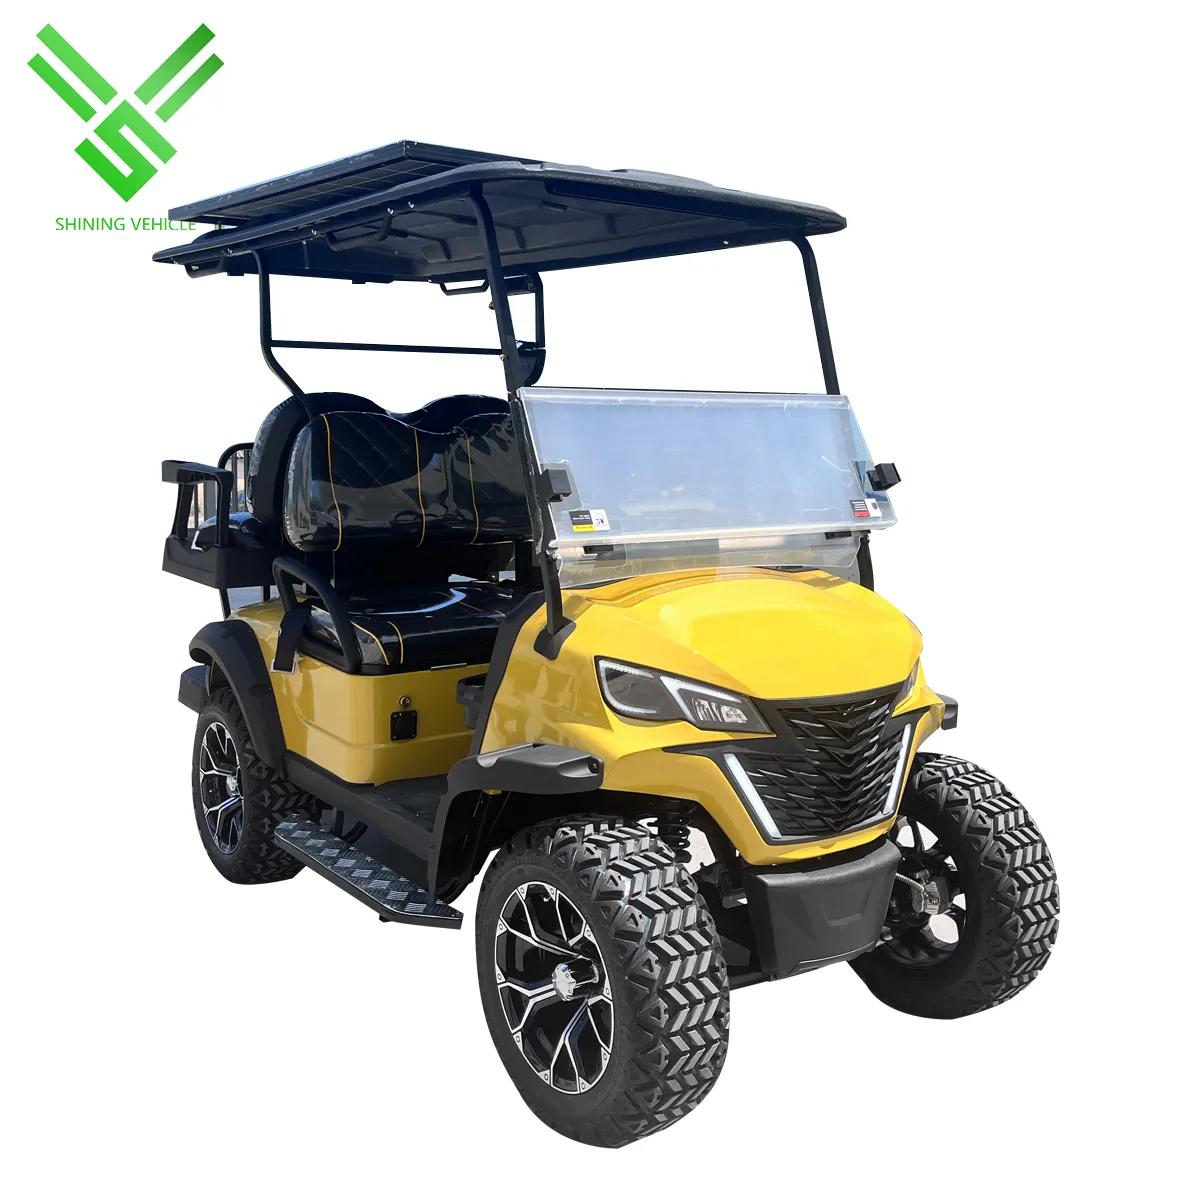 Carro de golf eléctrico de 2 asientos brillante aprobado por la CEE, carrito de golf eléctrico con batería de 2 asientos fabricado en China con aprobación CE